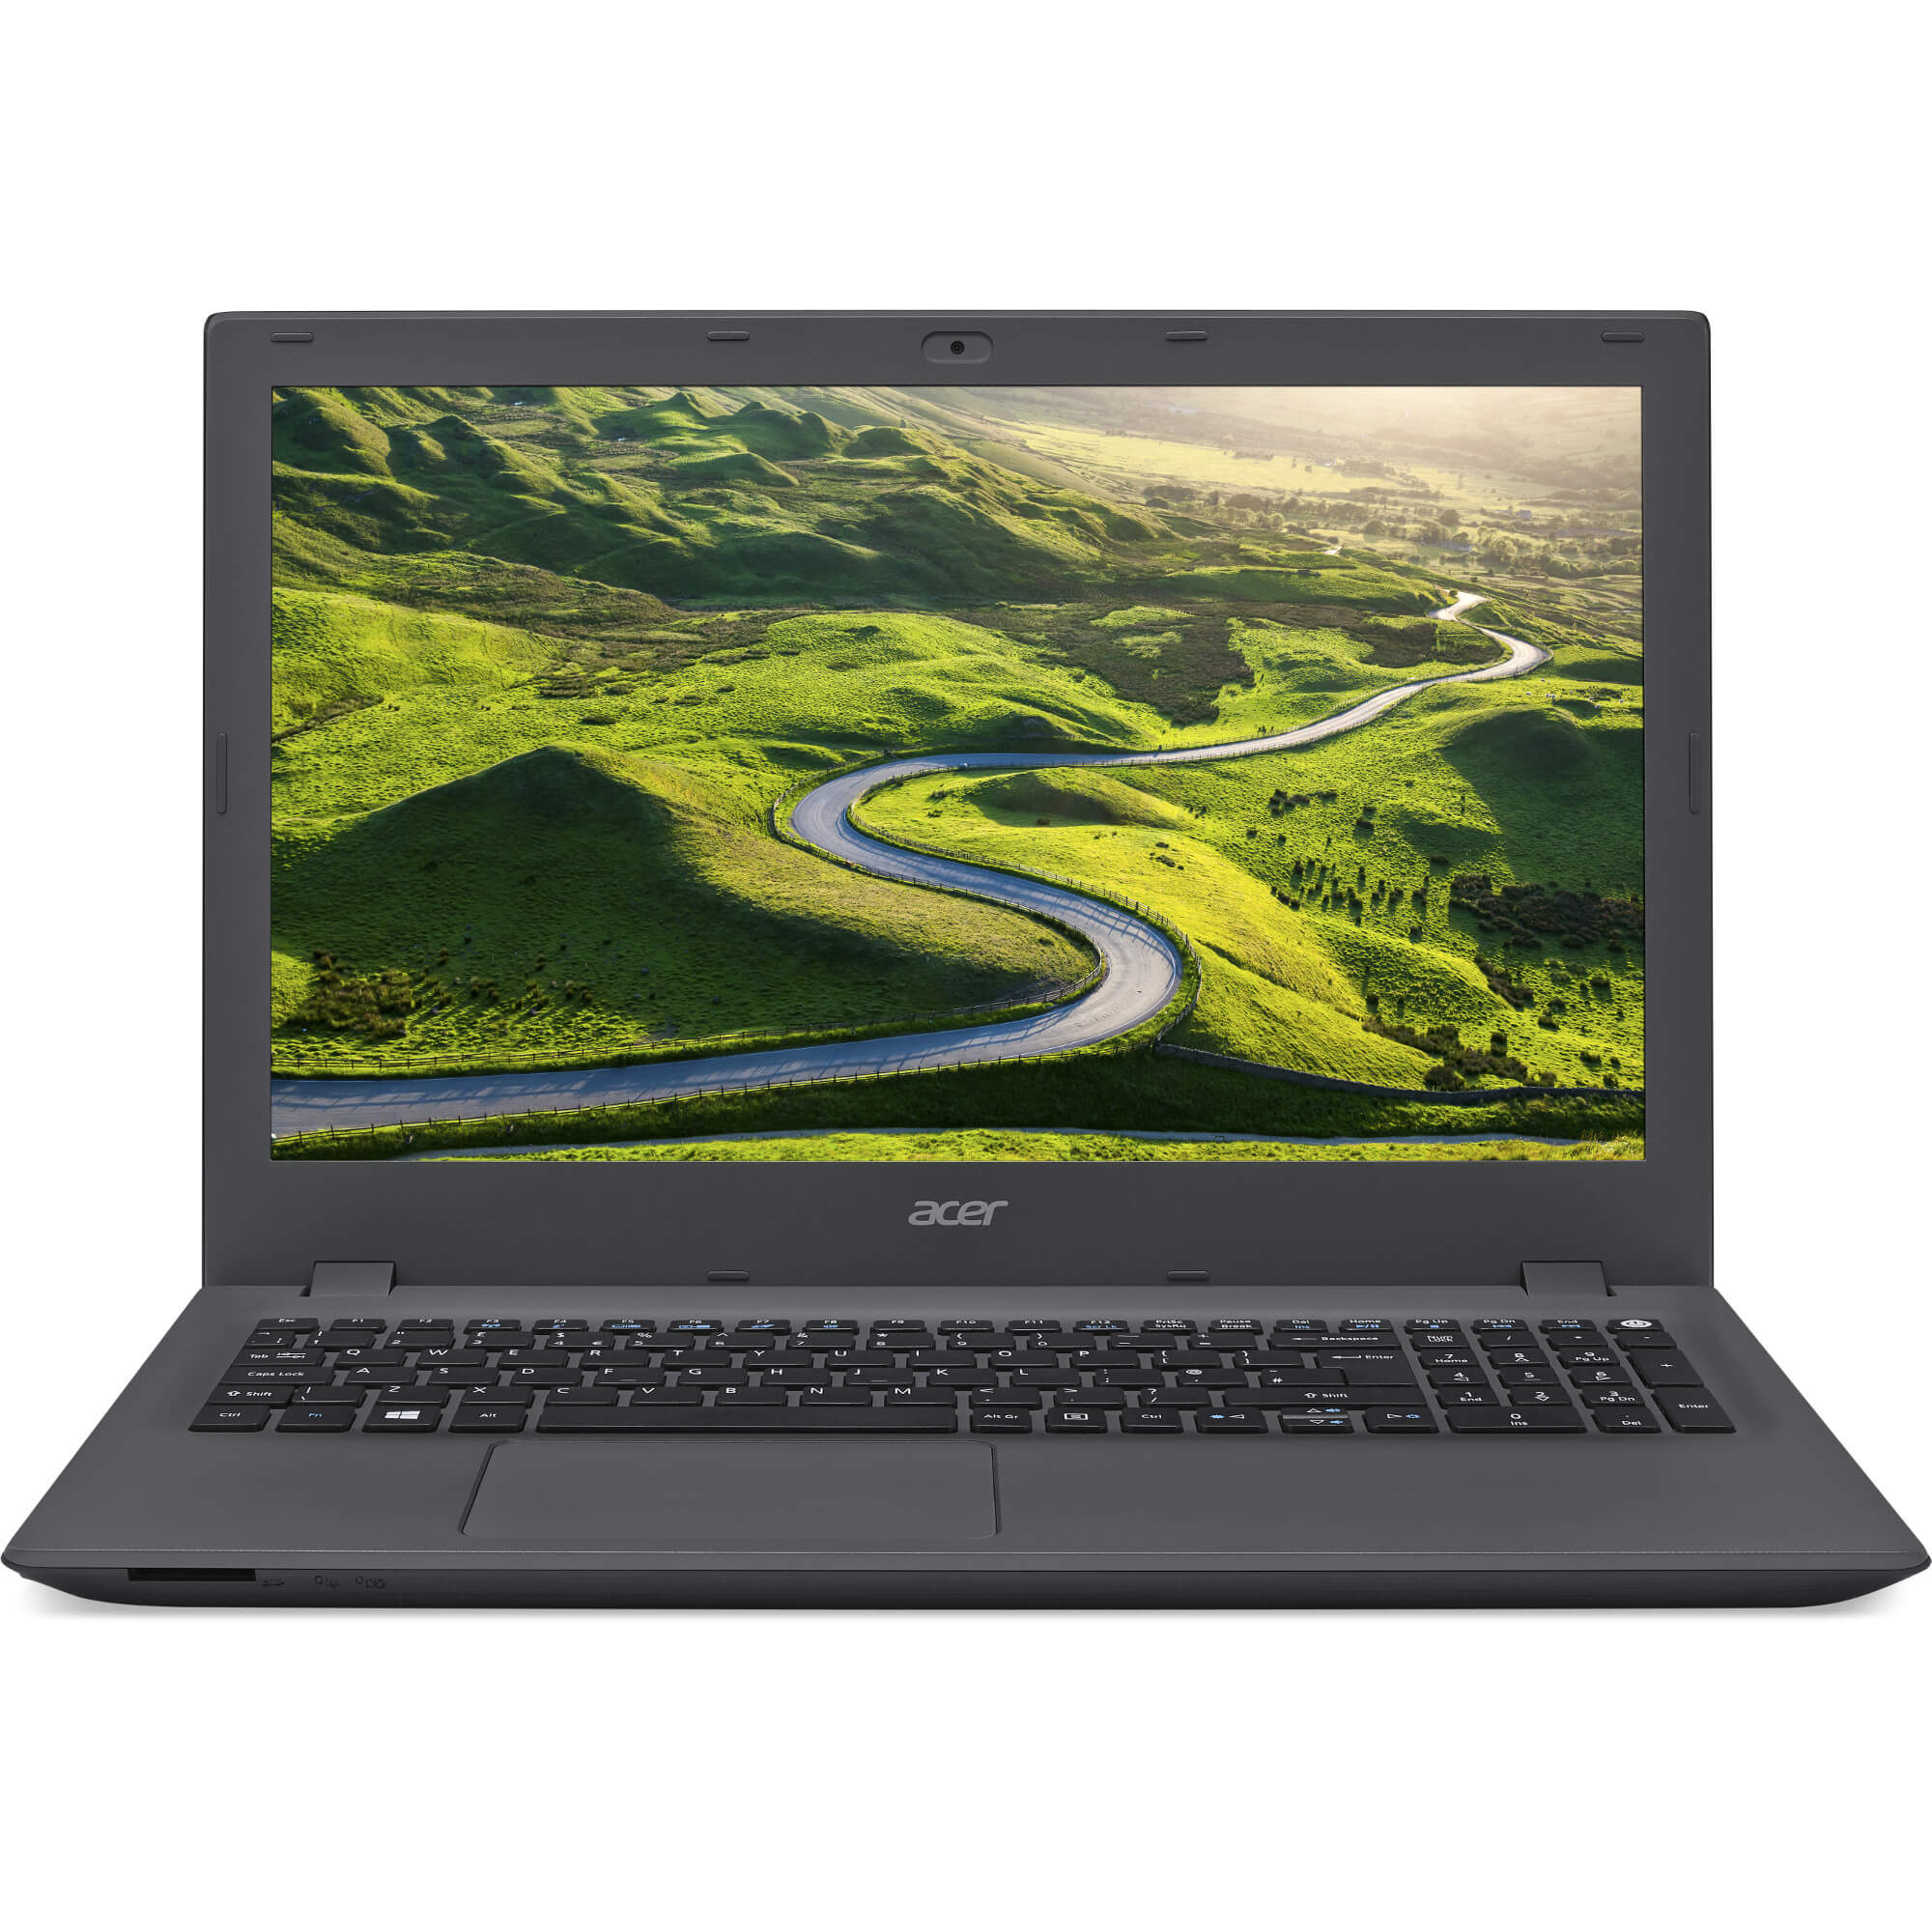  Laptop Acer E5-573G-59F9, Intel Core i5-5200U, 4GB DDR3, HDD 500GB, nVidia GeForce 920M 2GB, Linux 